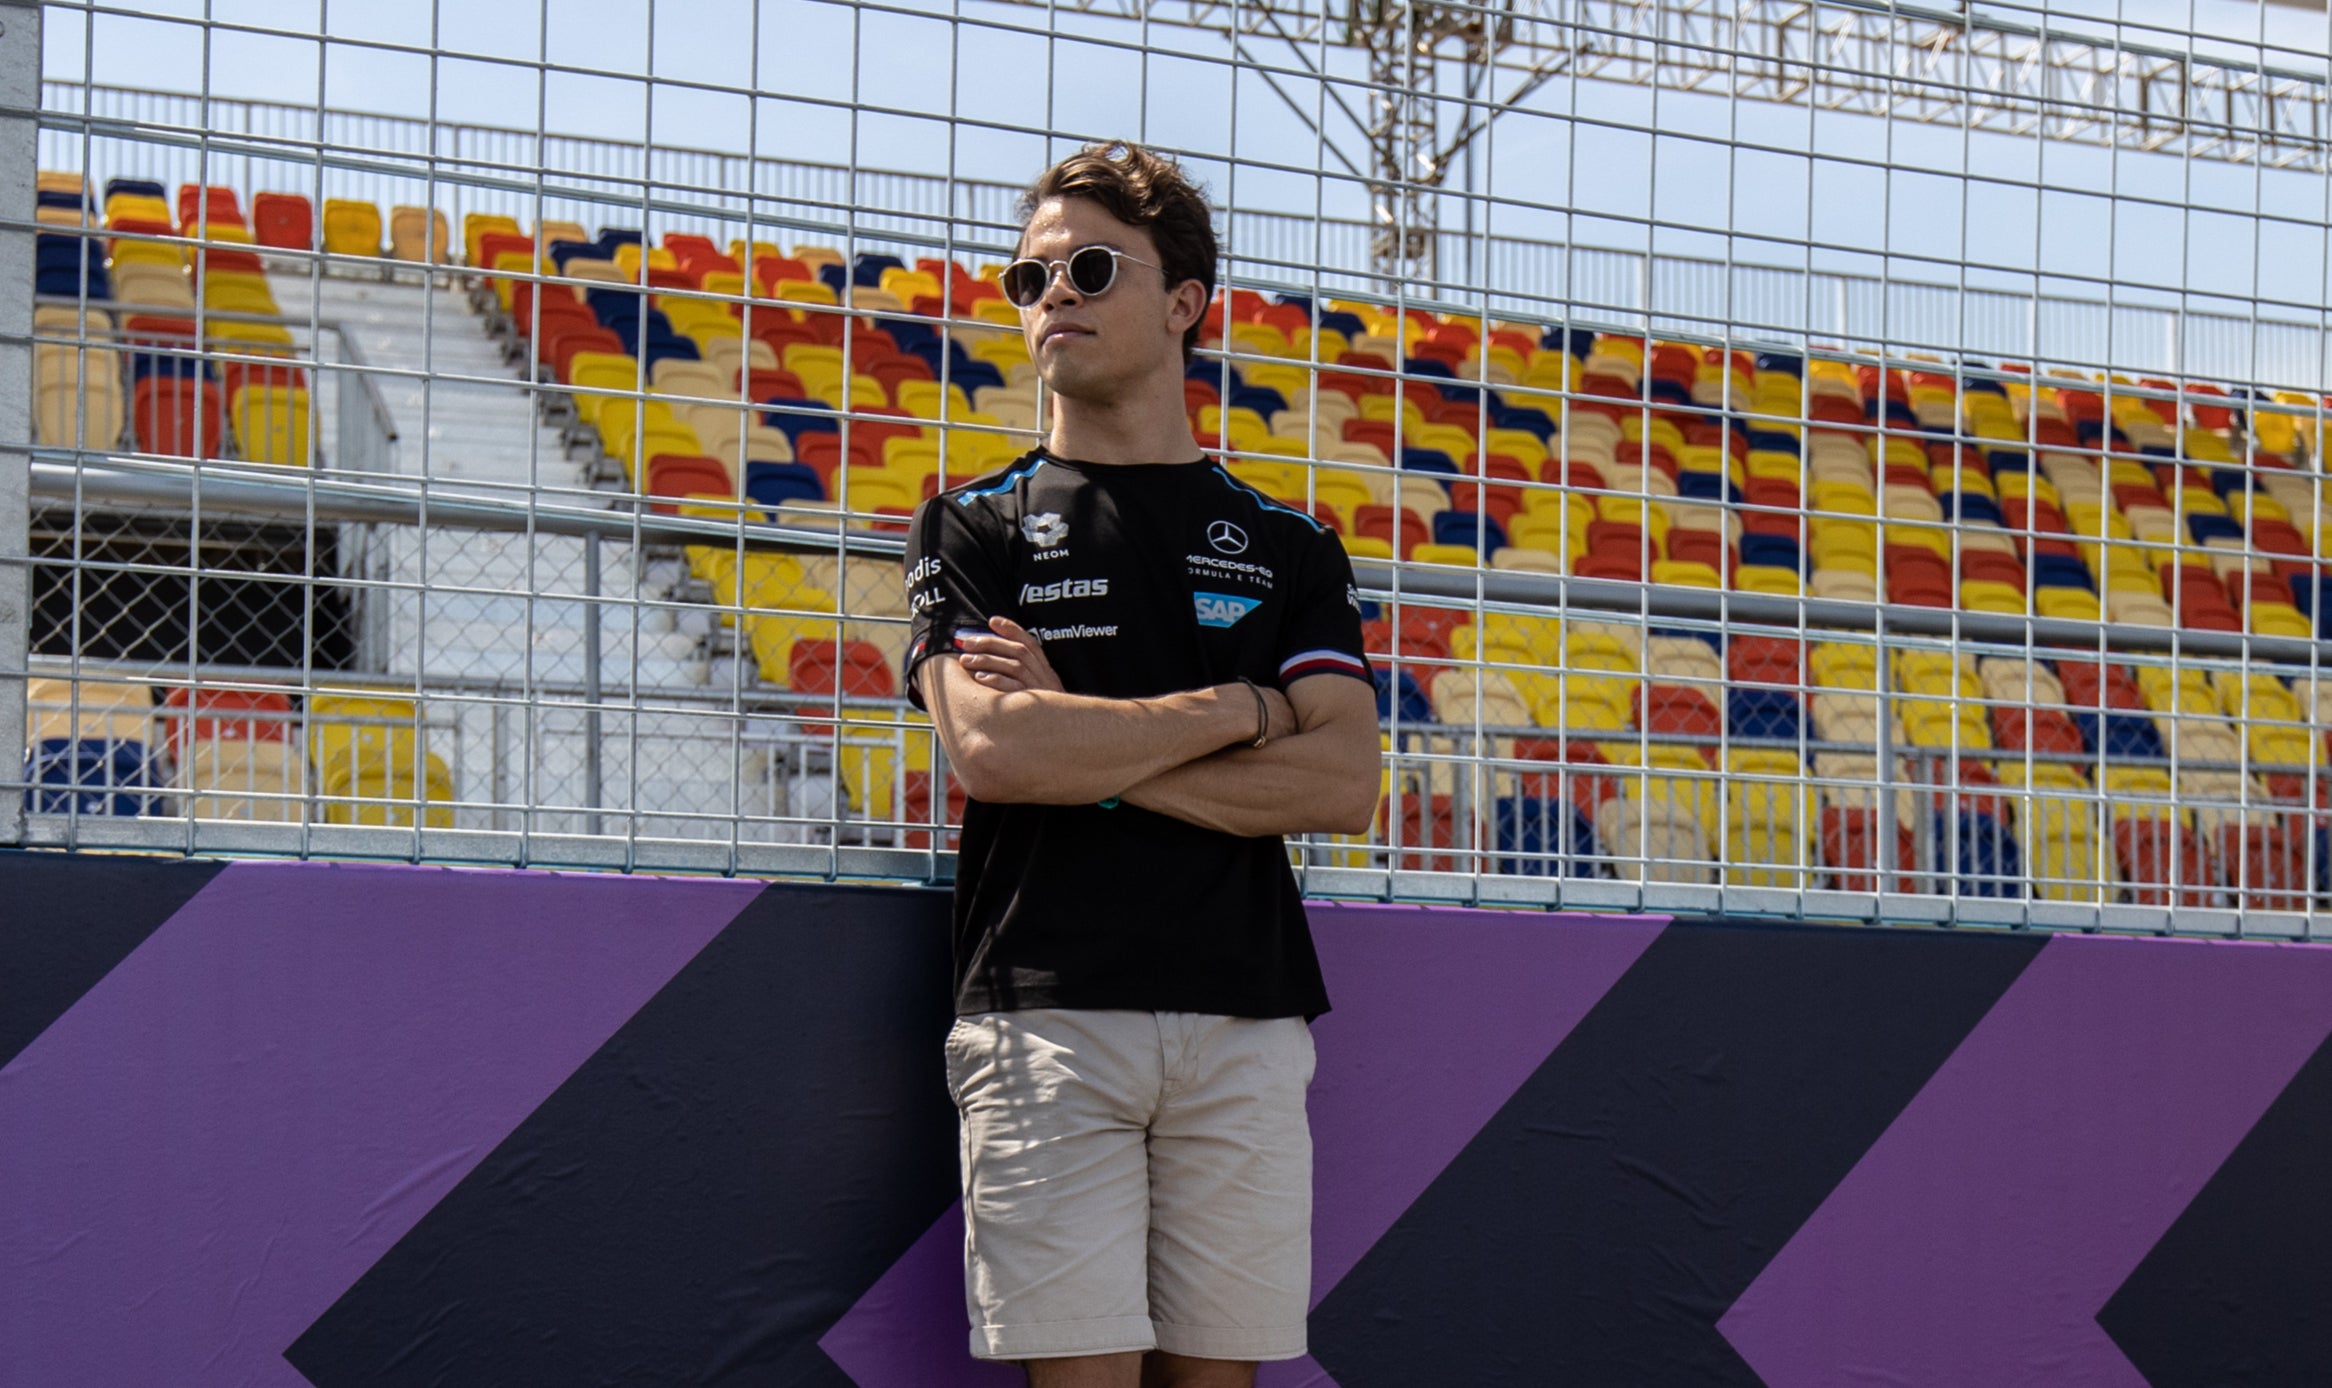 Nyck de Vries will take Albon’s place for the Italian Grand Prix